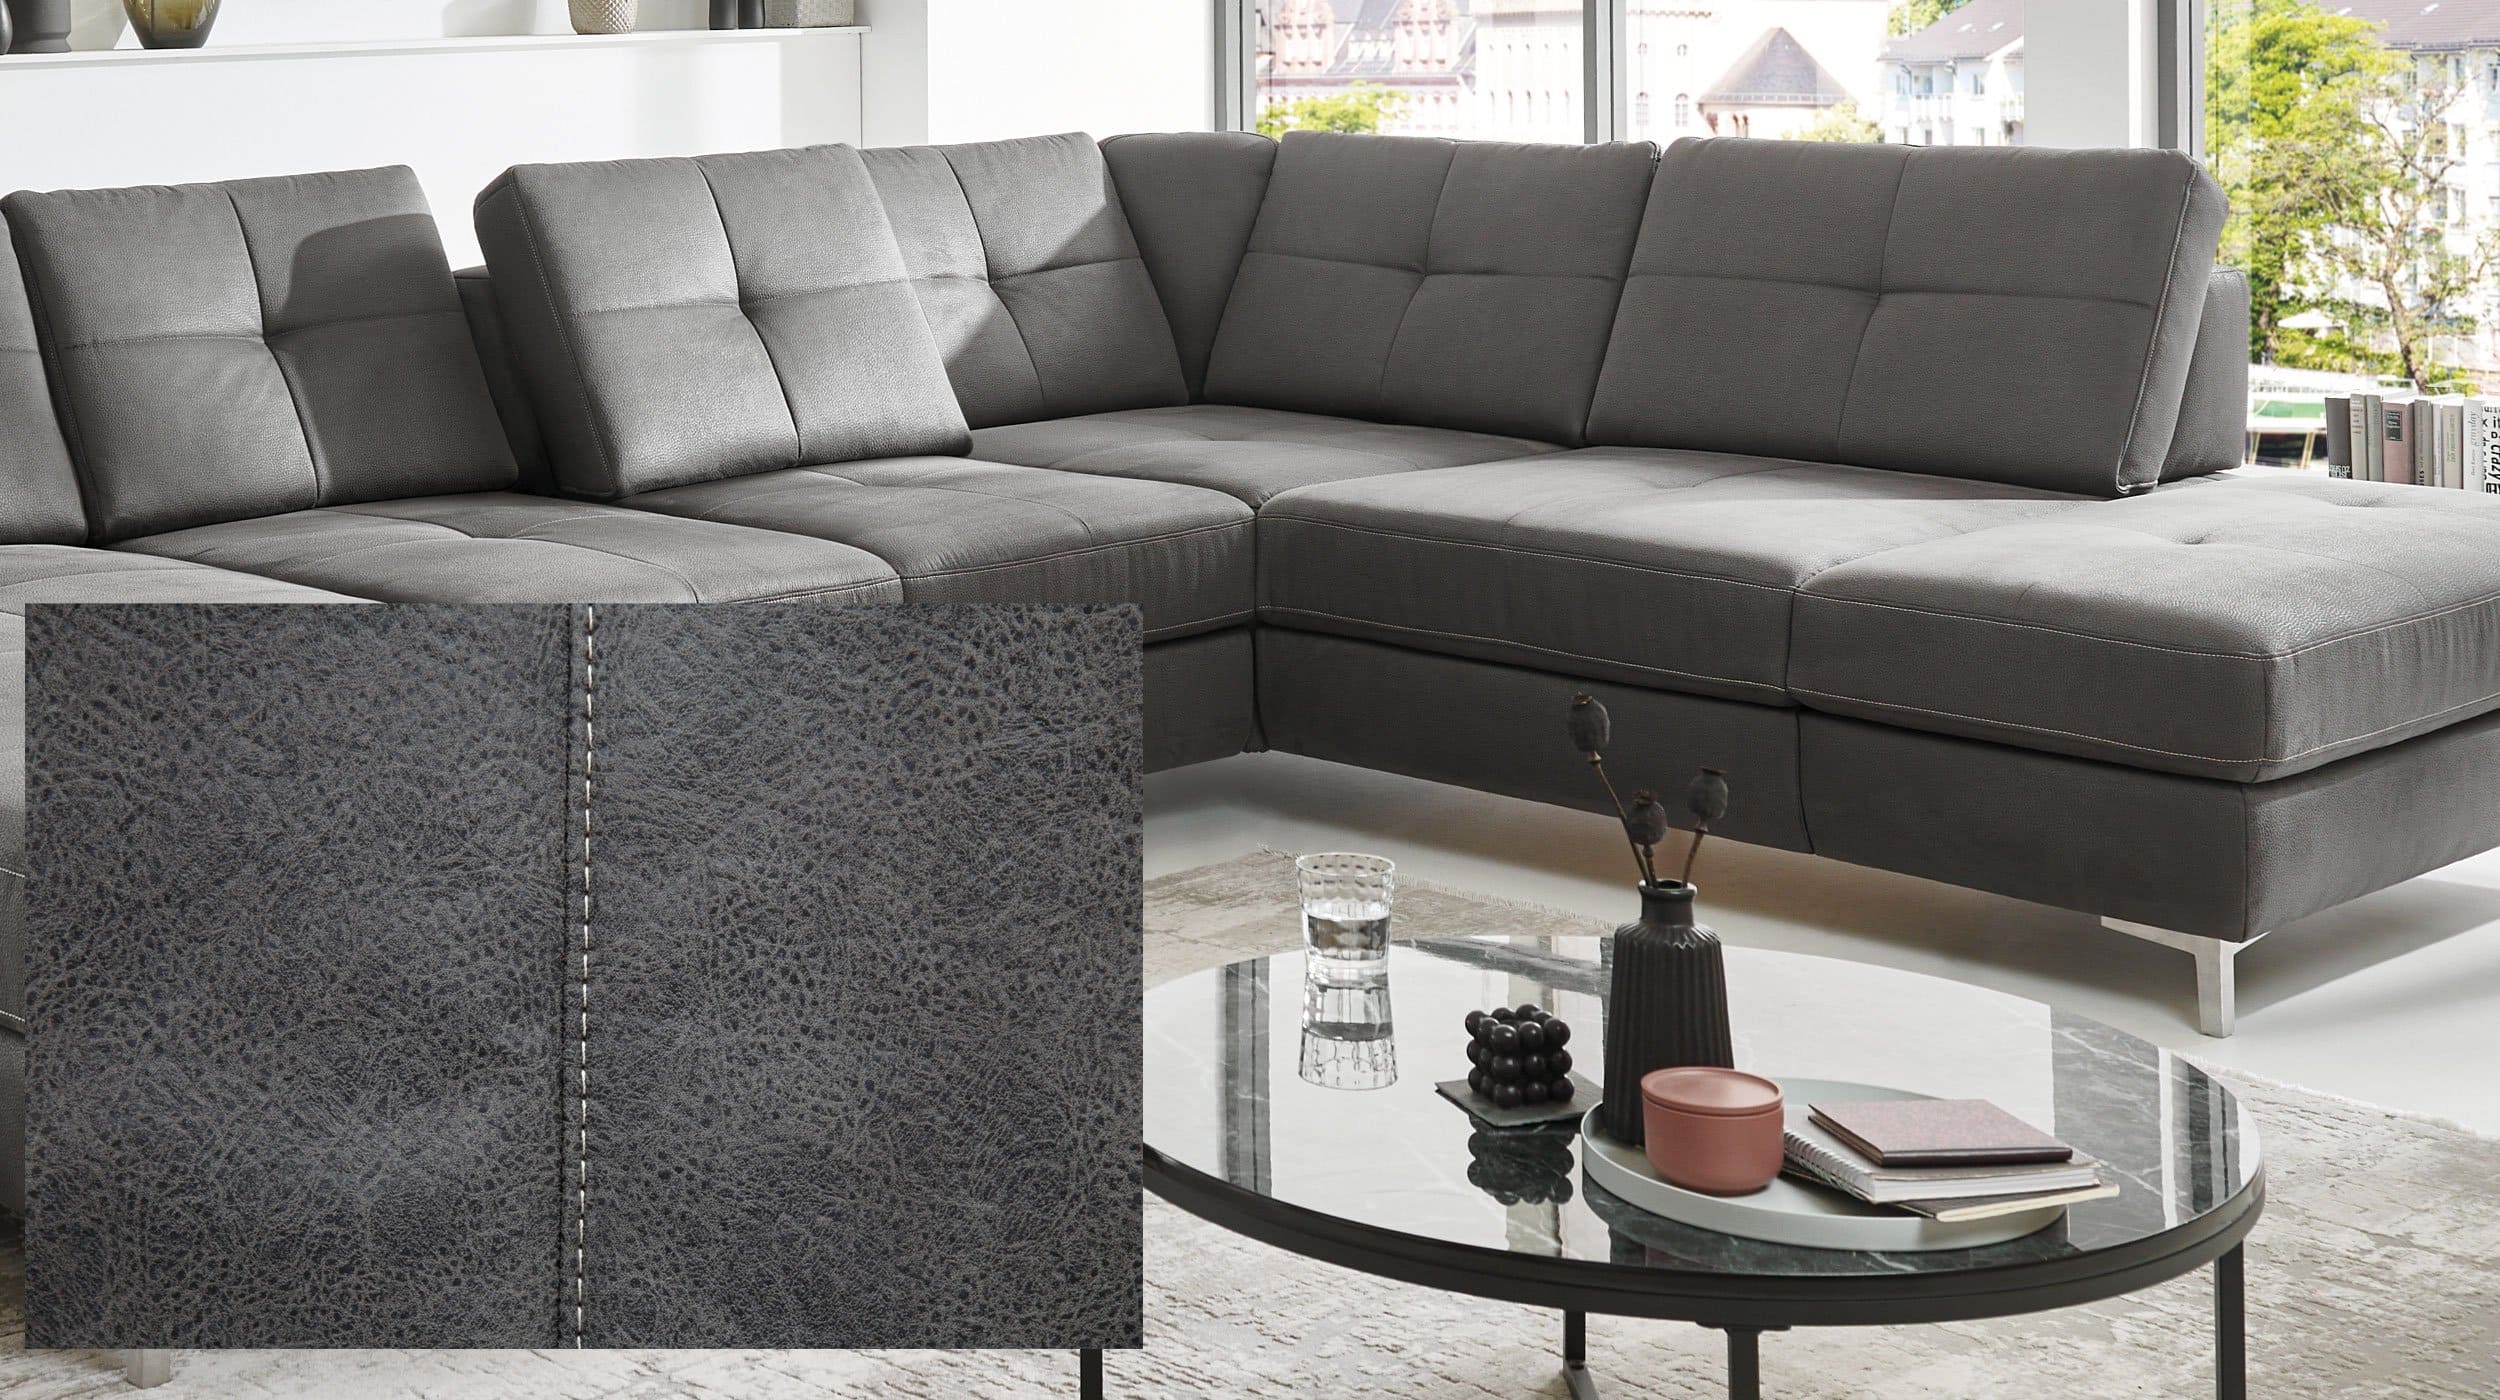 Couchliebe® Wohnlandschaft planbar - grau - Basis Version - SEATTLE